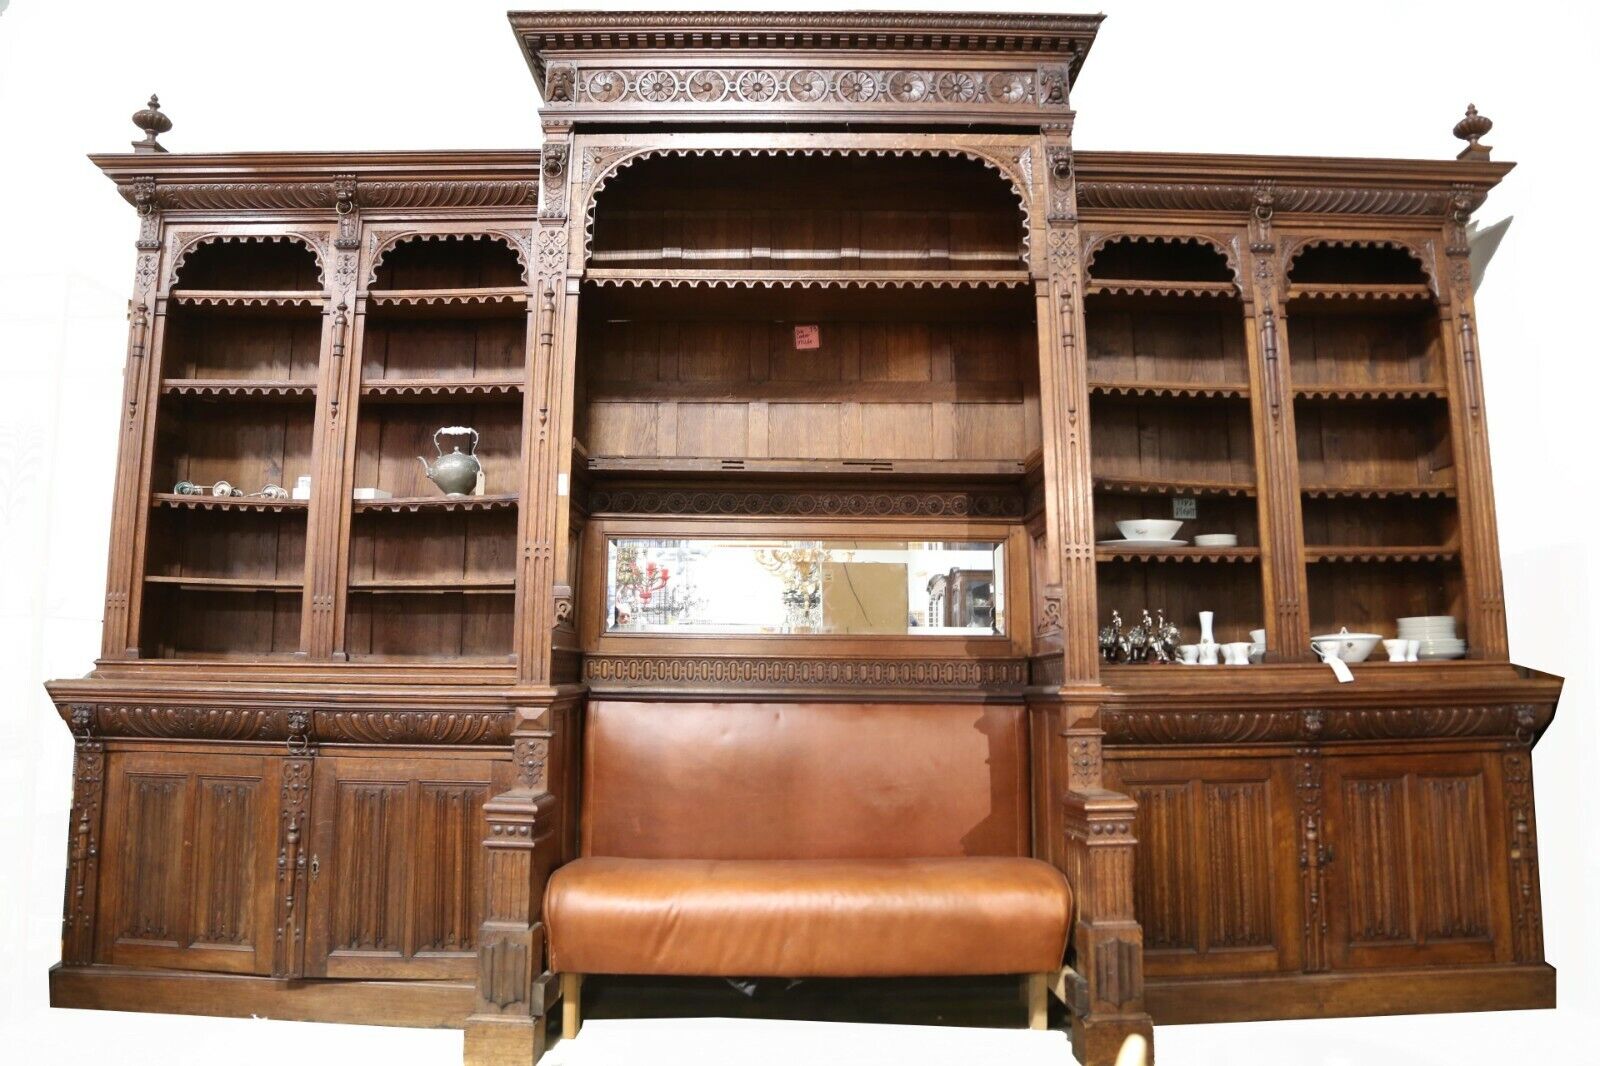  Antique Bookcase / Bench, Monumental, Renaissance Revival Oak, 1800's, Amazing!